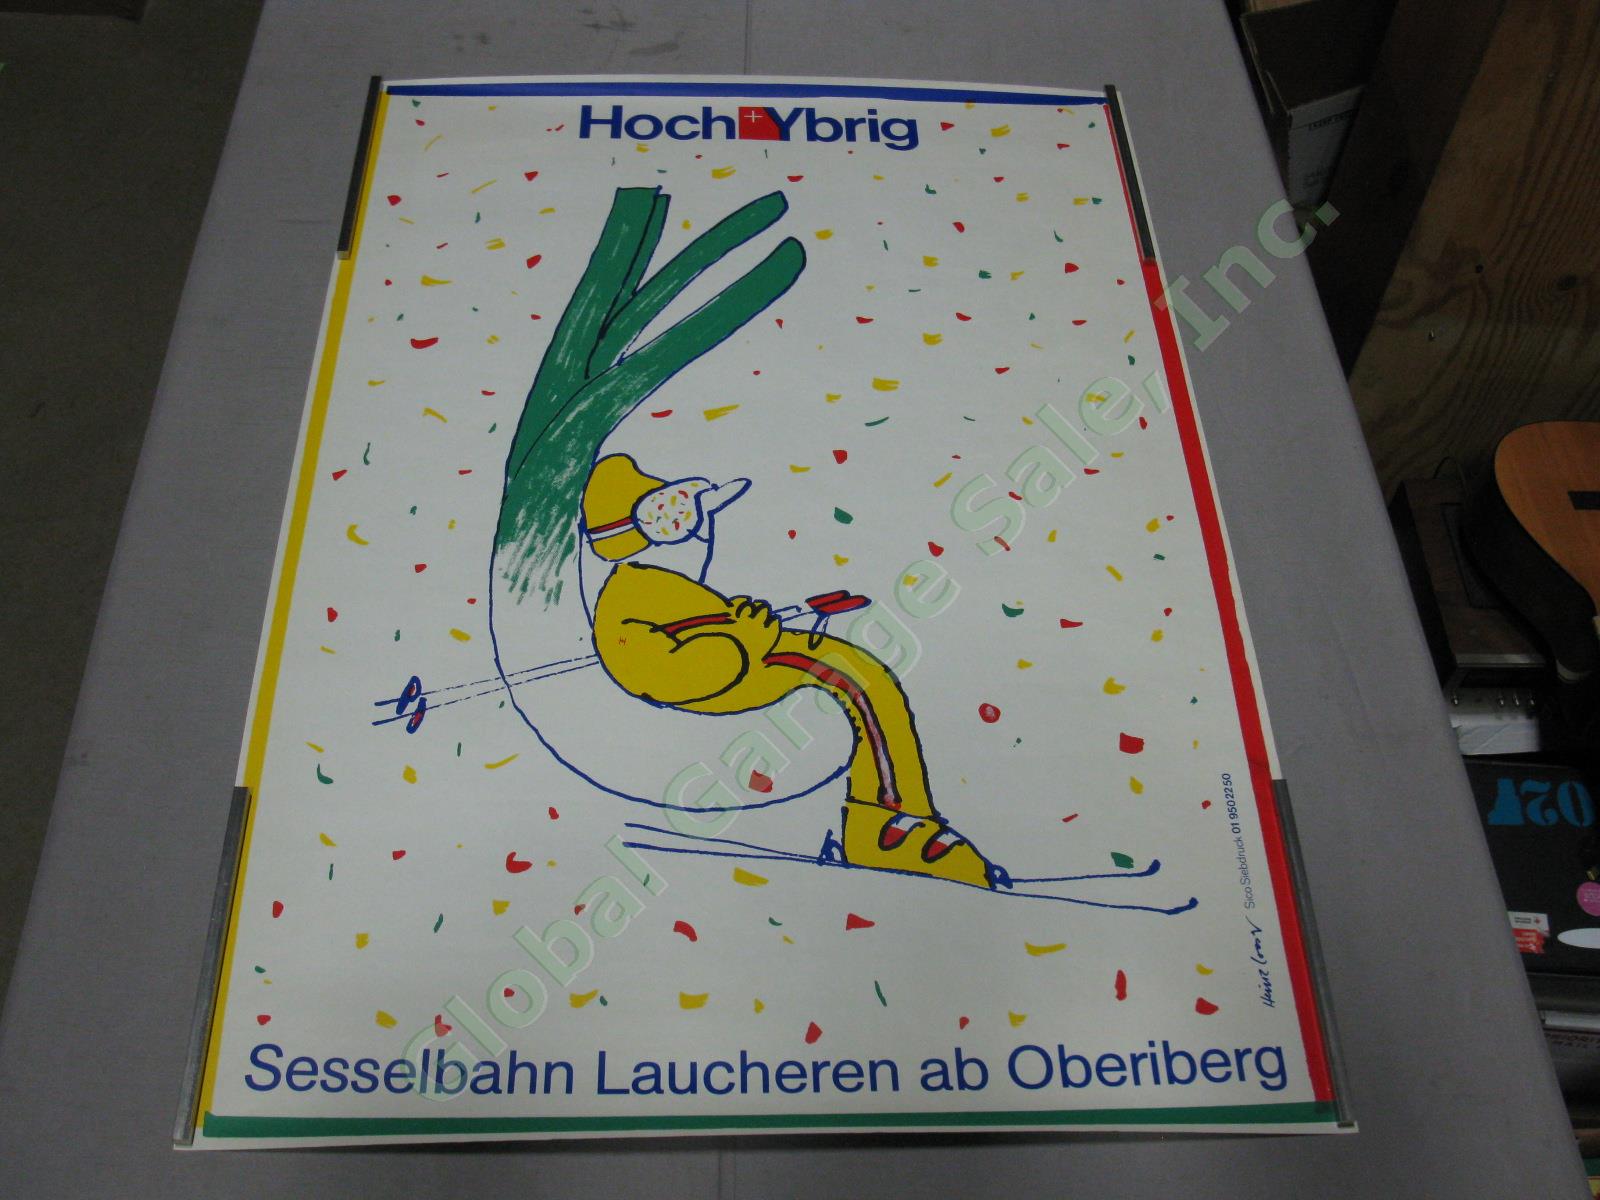 Vtg 1970s Swiss Travel Poster Hoch-Ybrig Resort Laucheren Ski Lift Chairlift NR!